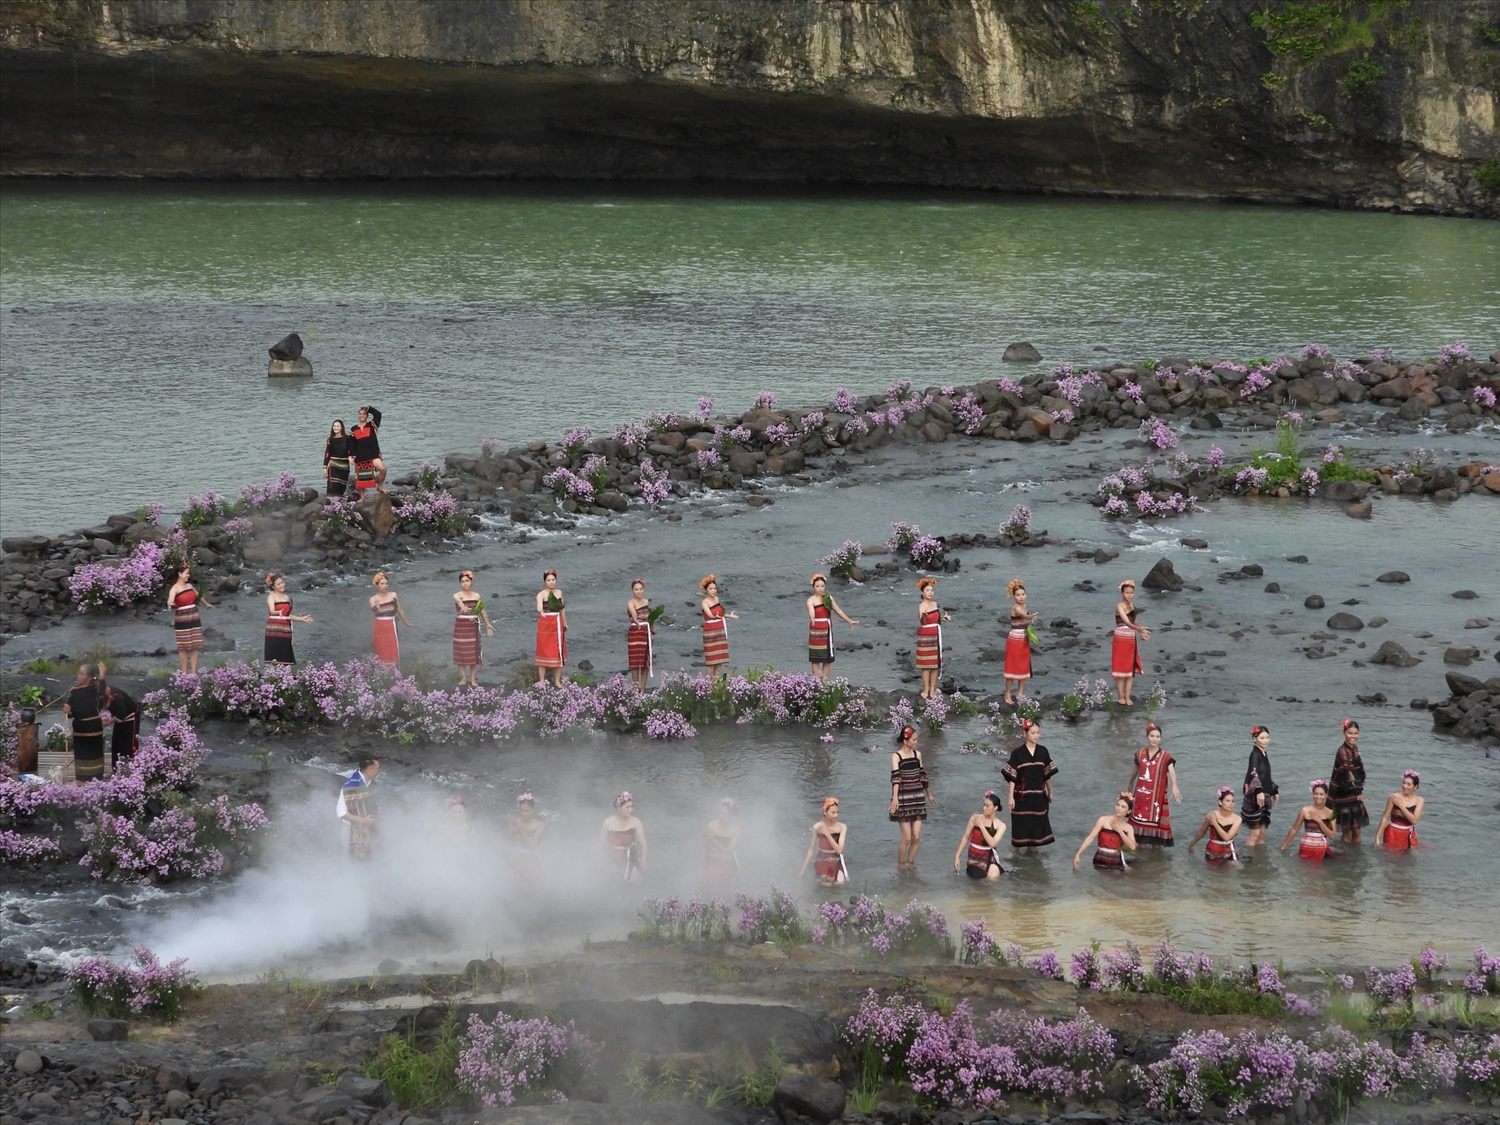 Chương trình thời trang nghệ thuật thổ cẩm các dân tộc Đắk Lắk diễn ra tại thác Dray Nur